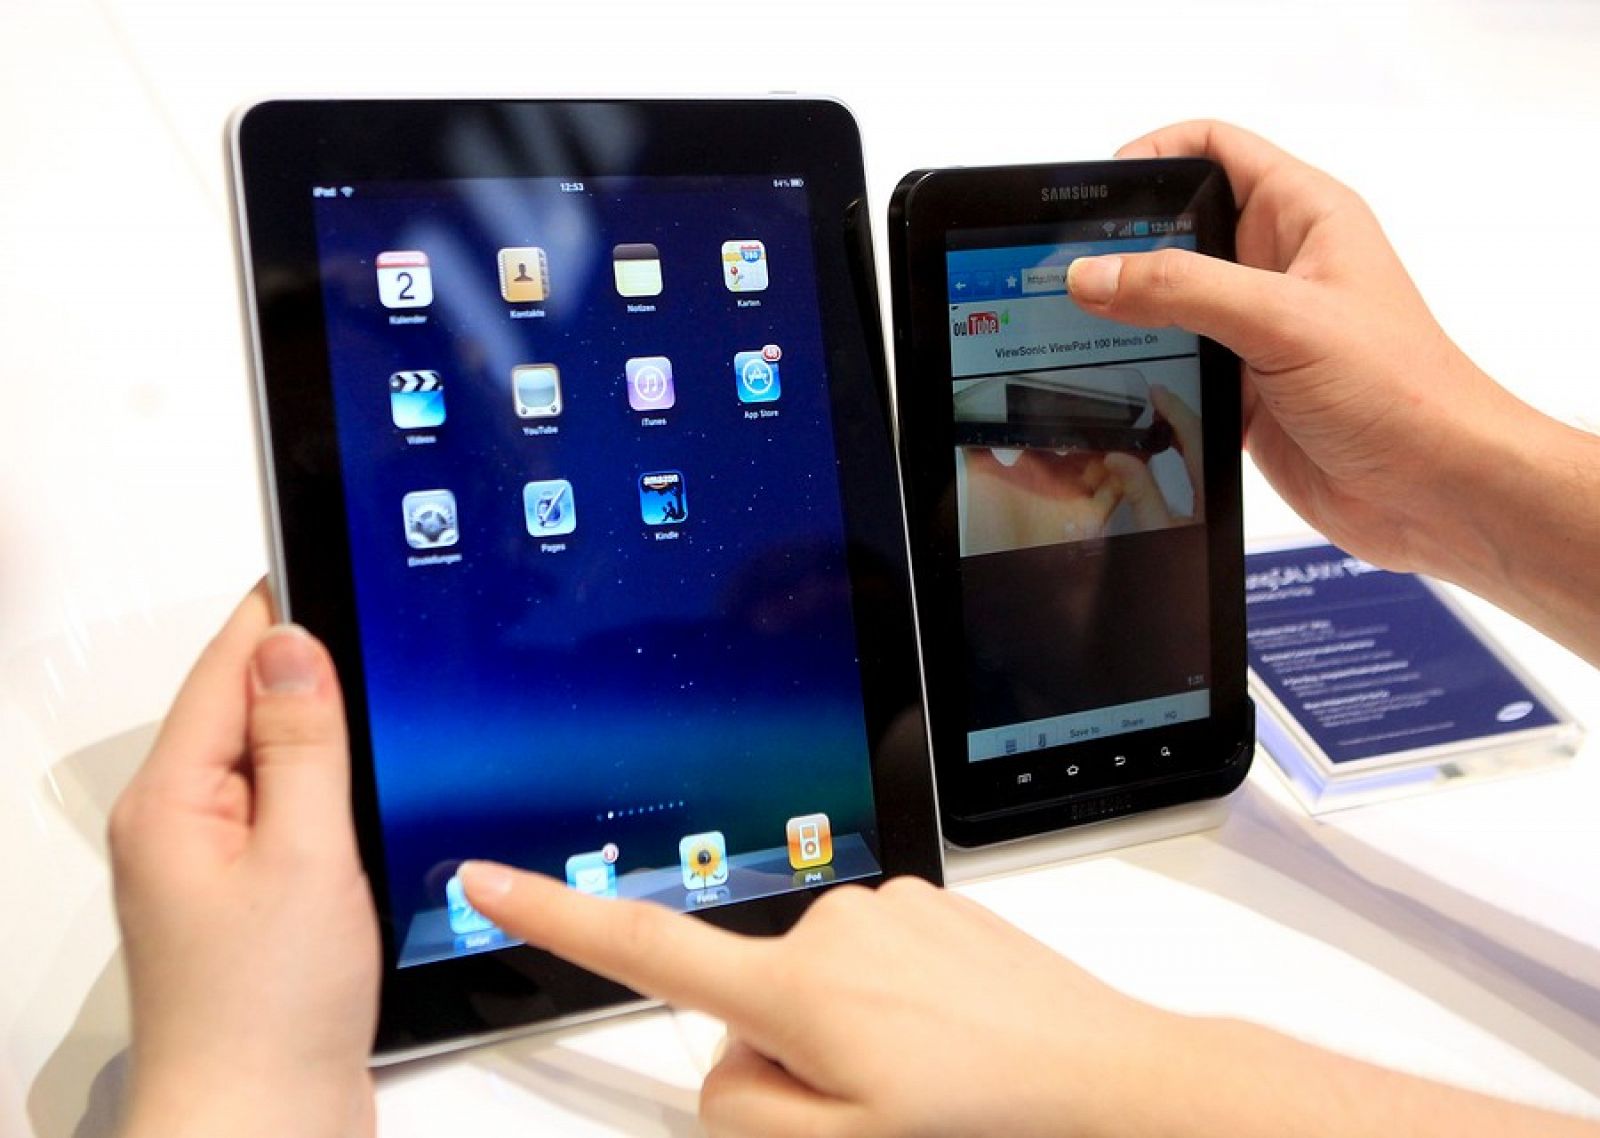 Comparación entre el iPad de Apple y el Galaxy Tab 7.7 de Samsung